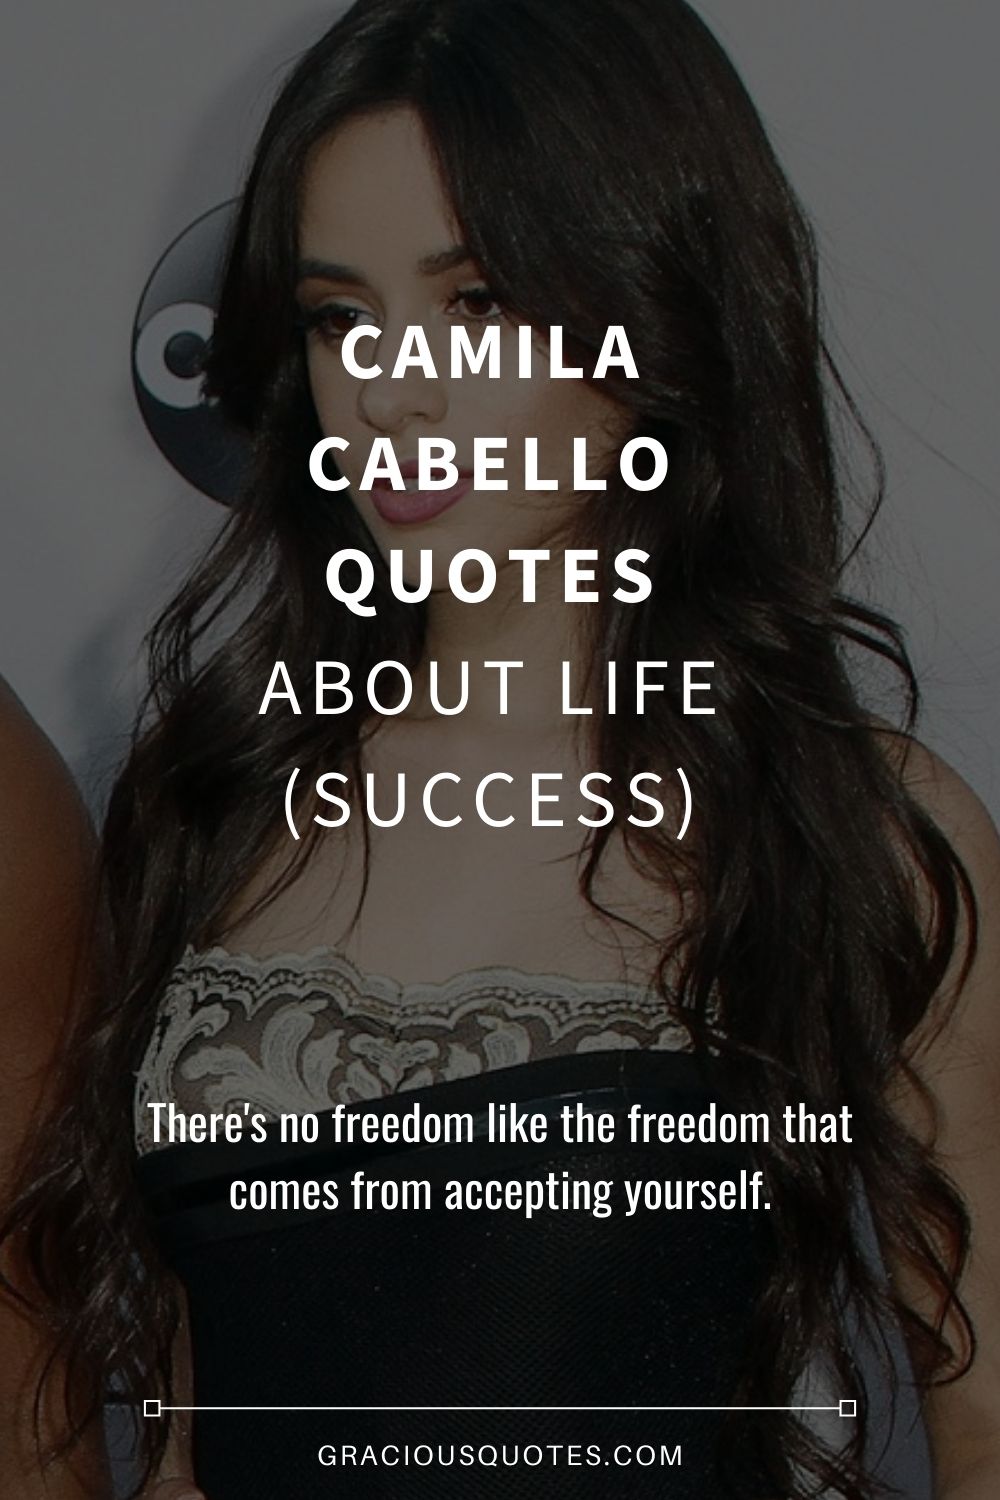 10 Best Camila Cabello Quotes